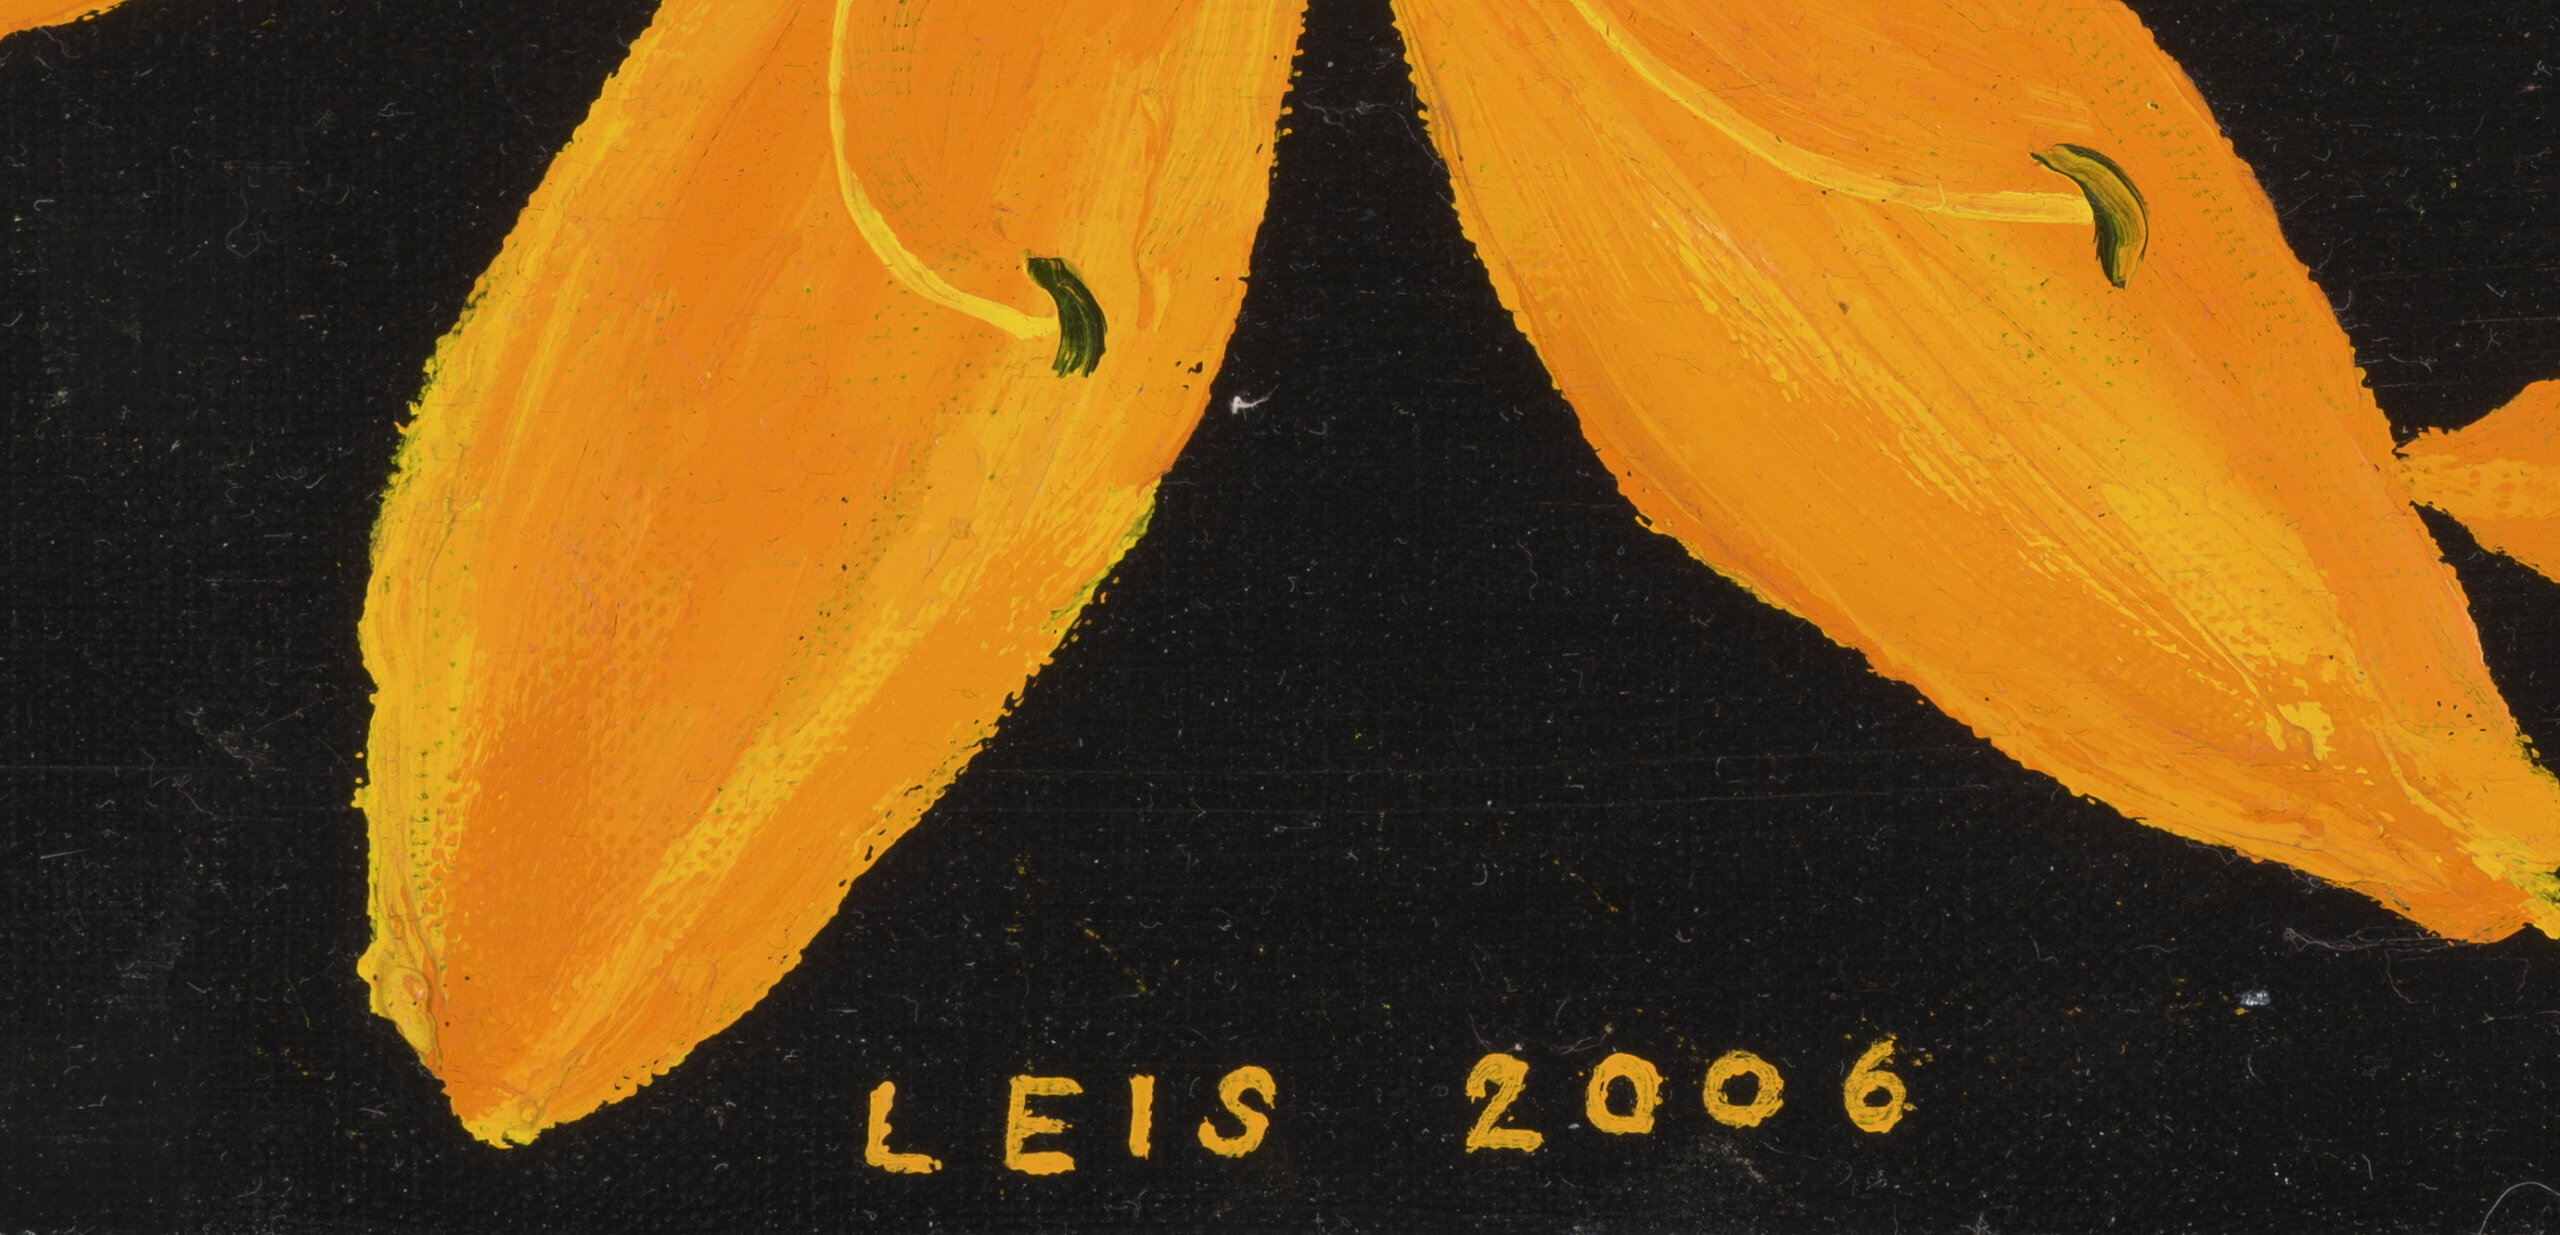 Malle Leis “Leekivad liiliad”, 2006. 26 x 100,2 cm.